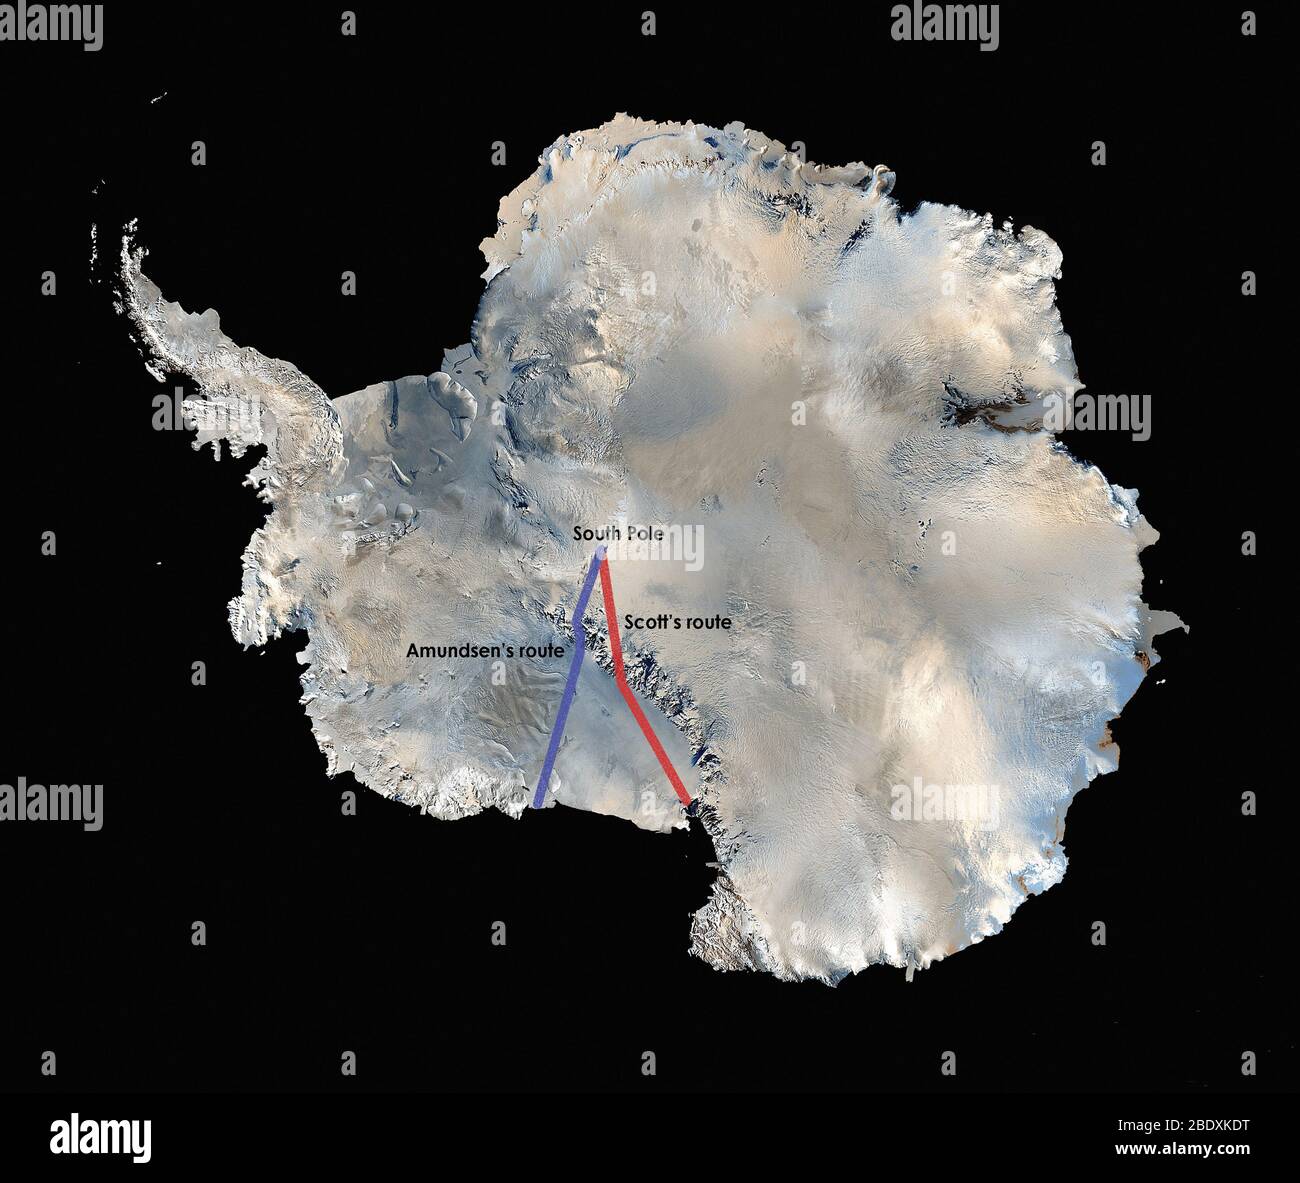 La prima mappa tridimensionale ad alta risoluzione dell'Antartide, a colori reali, è stata costruita a partire da oltre 1,100 immagini provenienti dal satellite Landsat 7. Per creare il Mosaico Landsat Image dell'Antartide (Lima), i visualizzatori scientifici hanno combinato le scene Landsat 7 (acquisite tra il 1999 e il 2001), un modello di elevazione digitale e le misurazioni dei dati di campo. Ci sono voluti anni per cucire insieme tutto per la pubblicazione nel 2007. La NASA ha collaborato con l'USGS, la National Science Foundation e l'Antartico Survey britannico per creare la mappa della più alta, più secca, più fredda, più invernale e più luminosa della baia della Terra Foto Stock